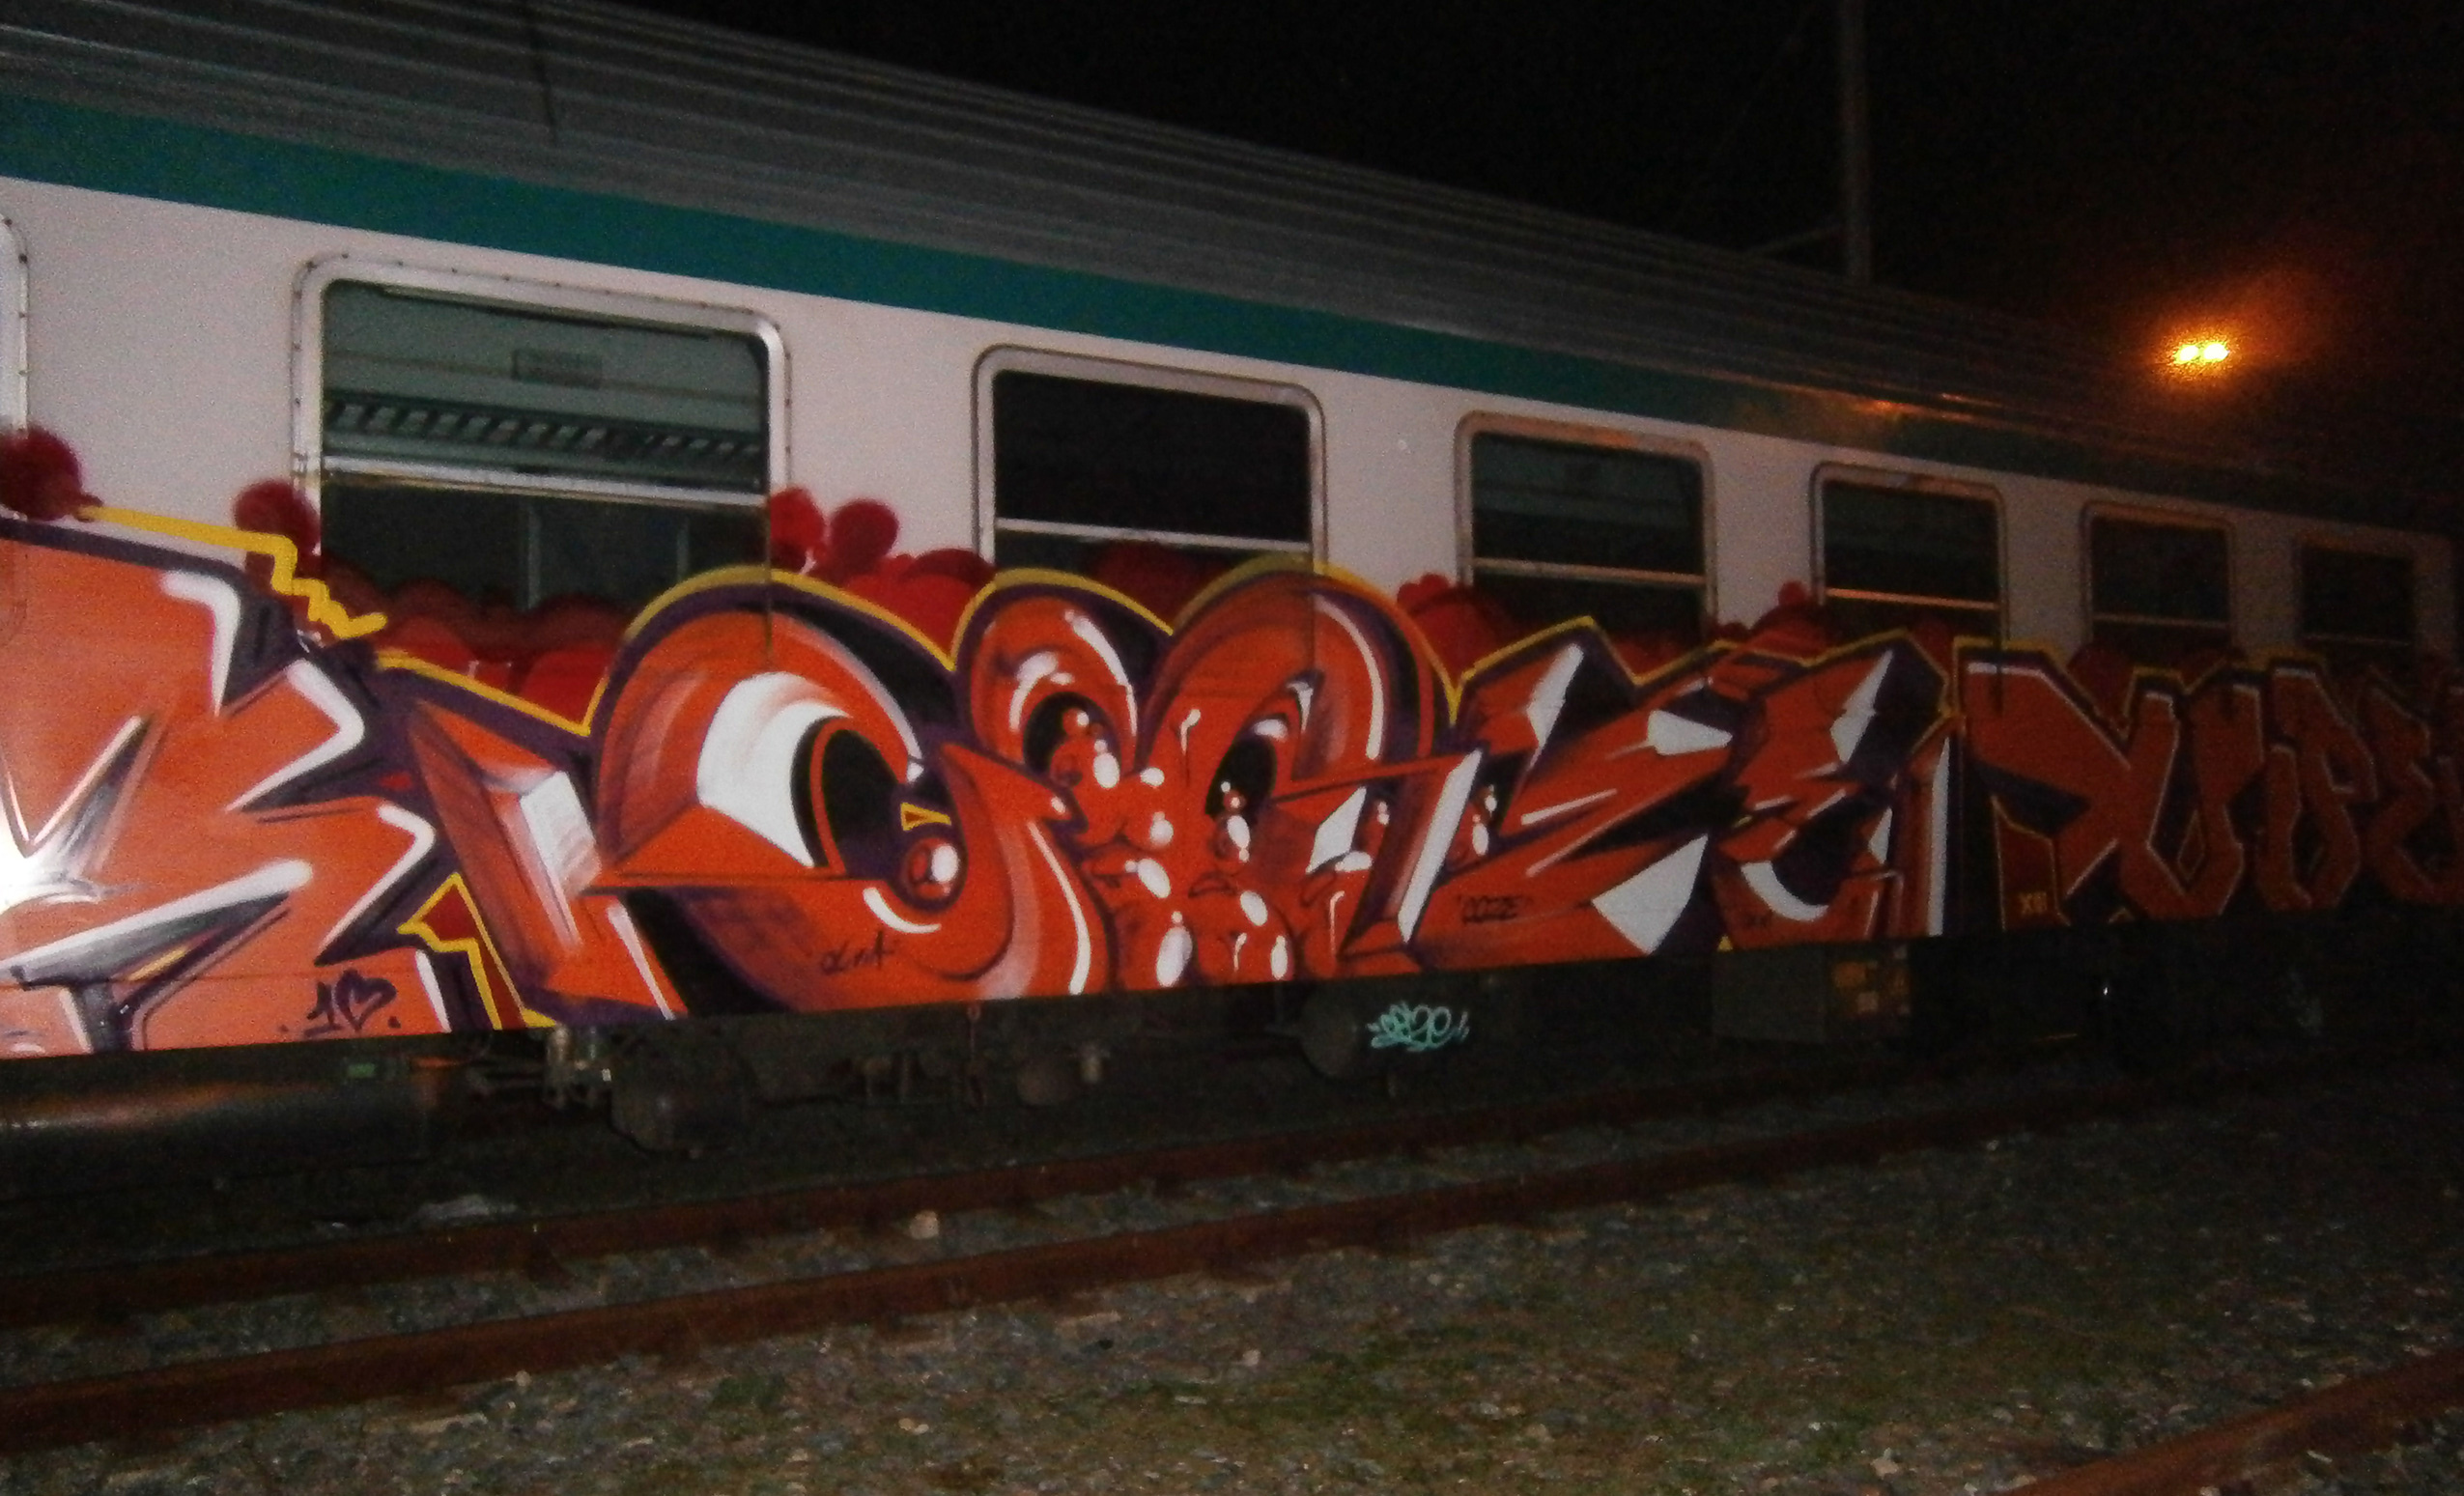 Coze Graffiti - pannello su un treno